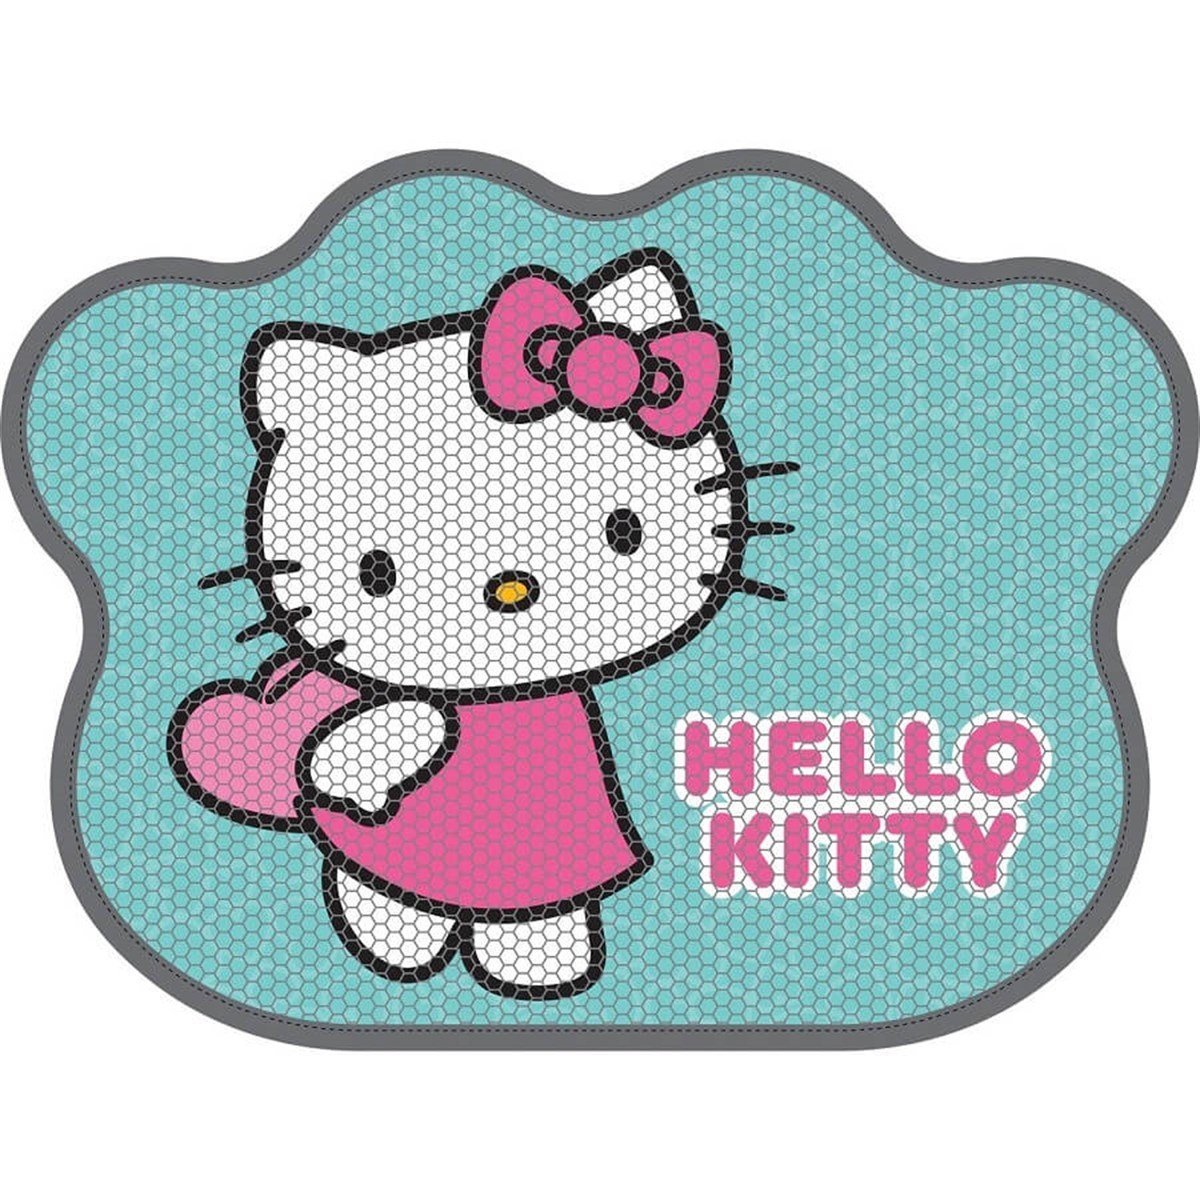 Hello Kitty Patili Turkuaz Kedi Paspası